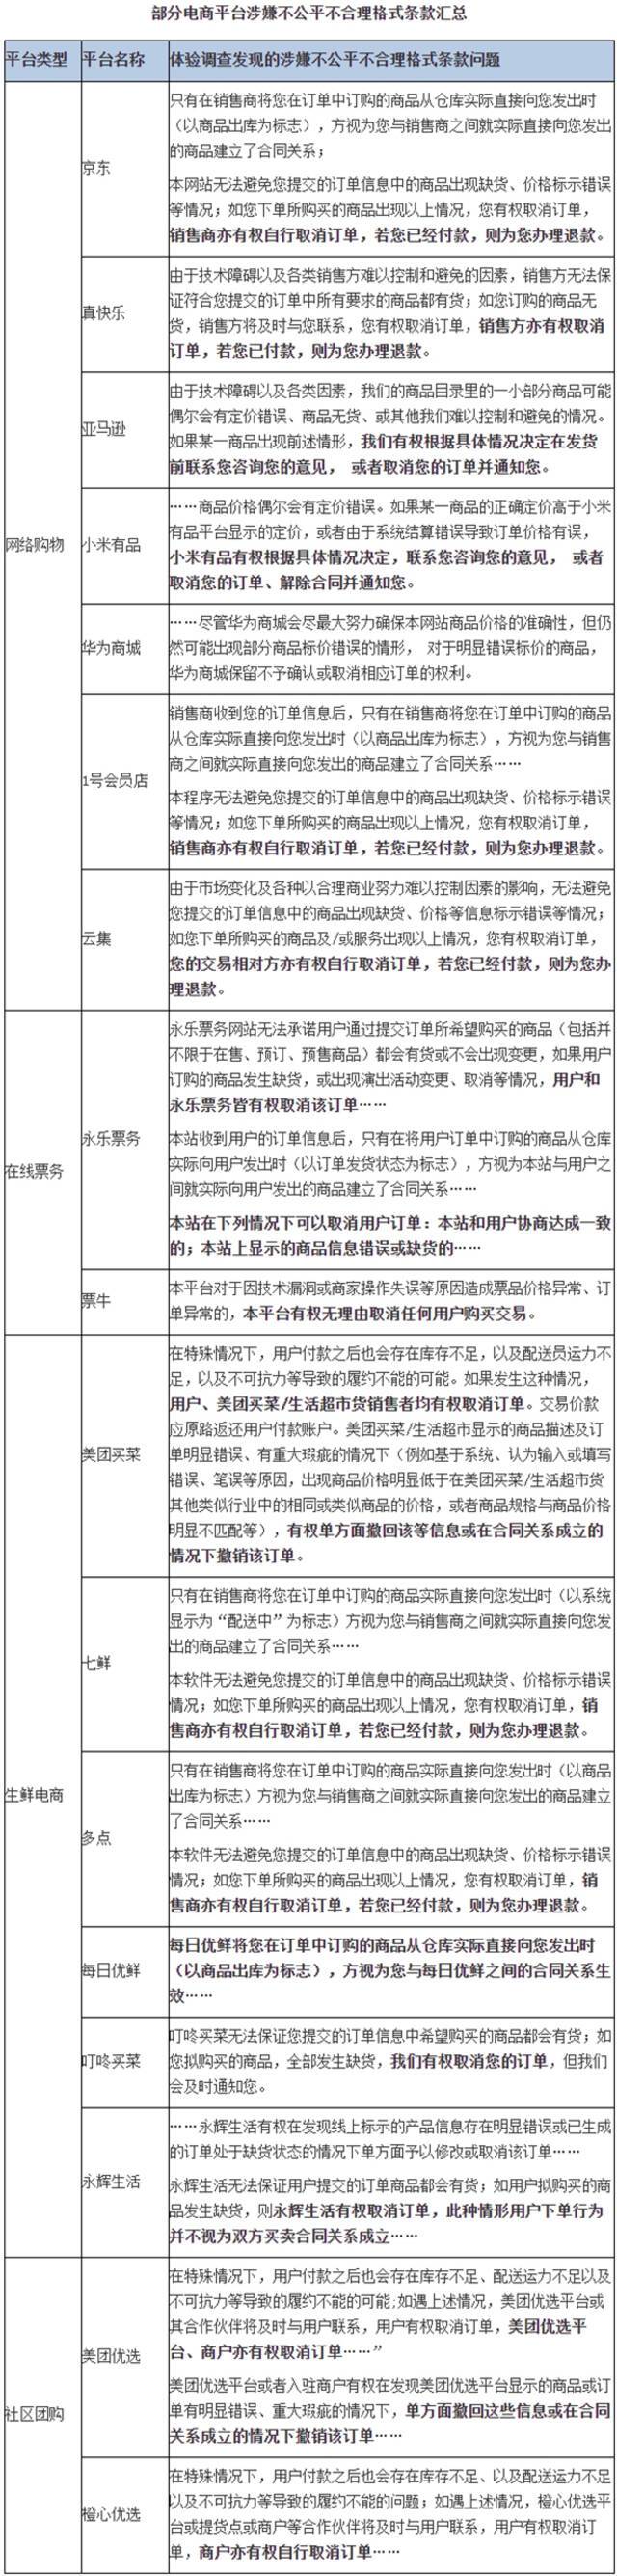 北京消协调查砍单问题：京东等17家平台涉嫌不公平格式条款